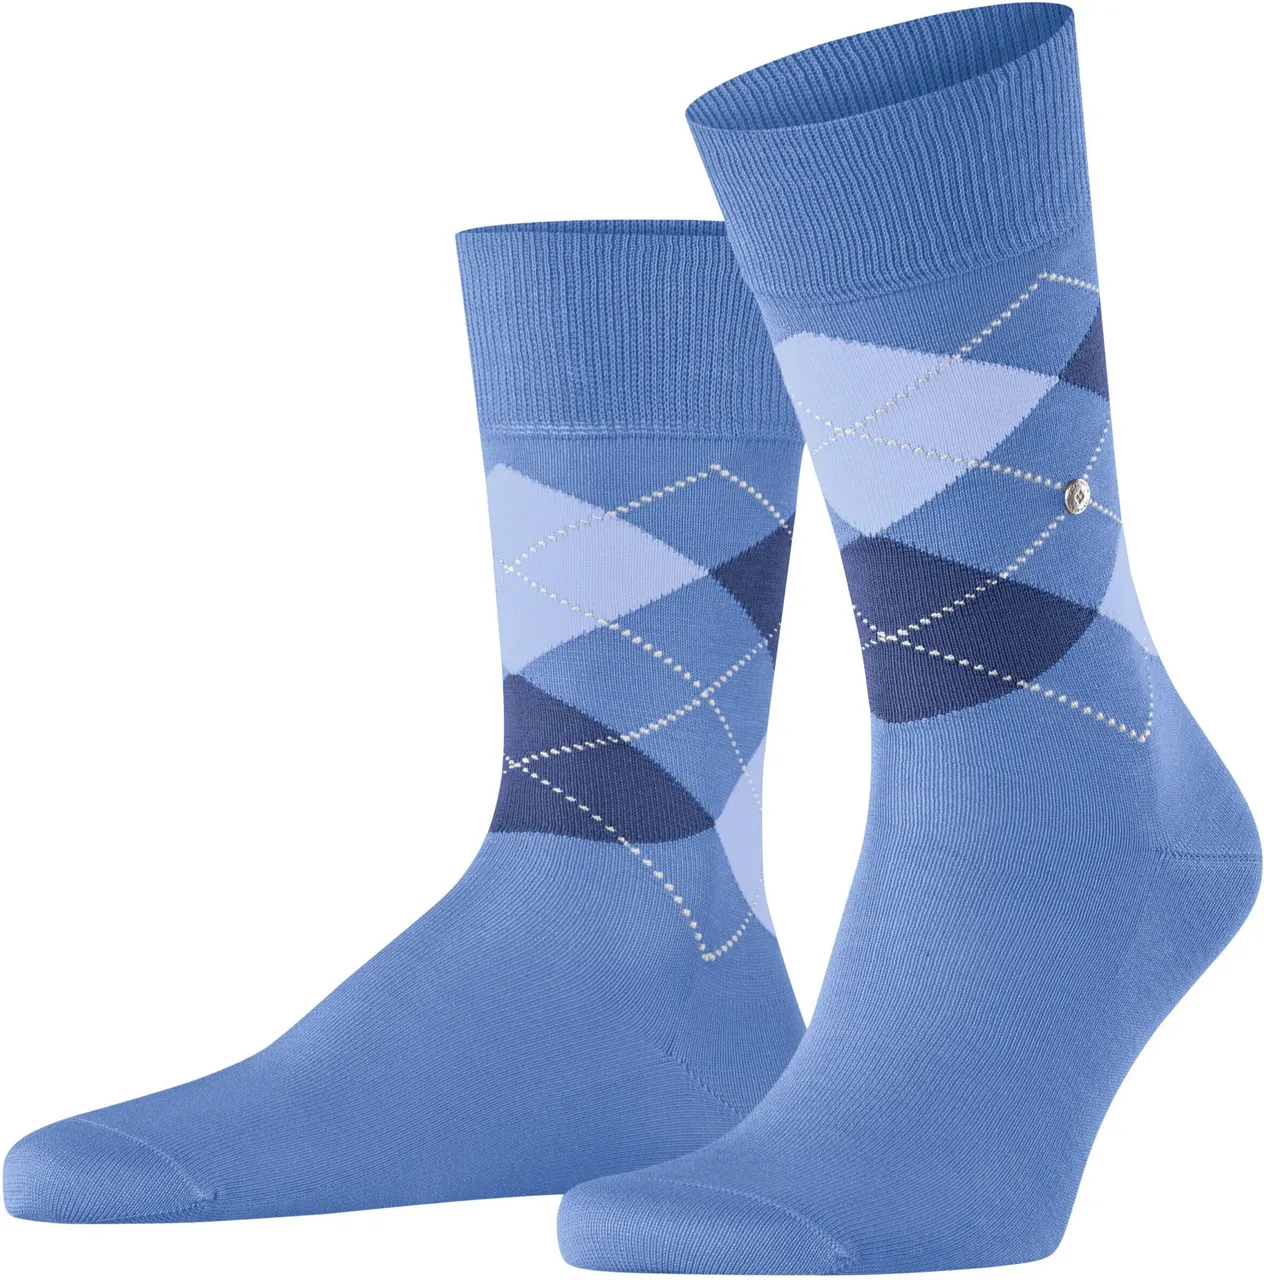 Burlington Manchester Socks Checkered 6550 Blue